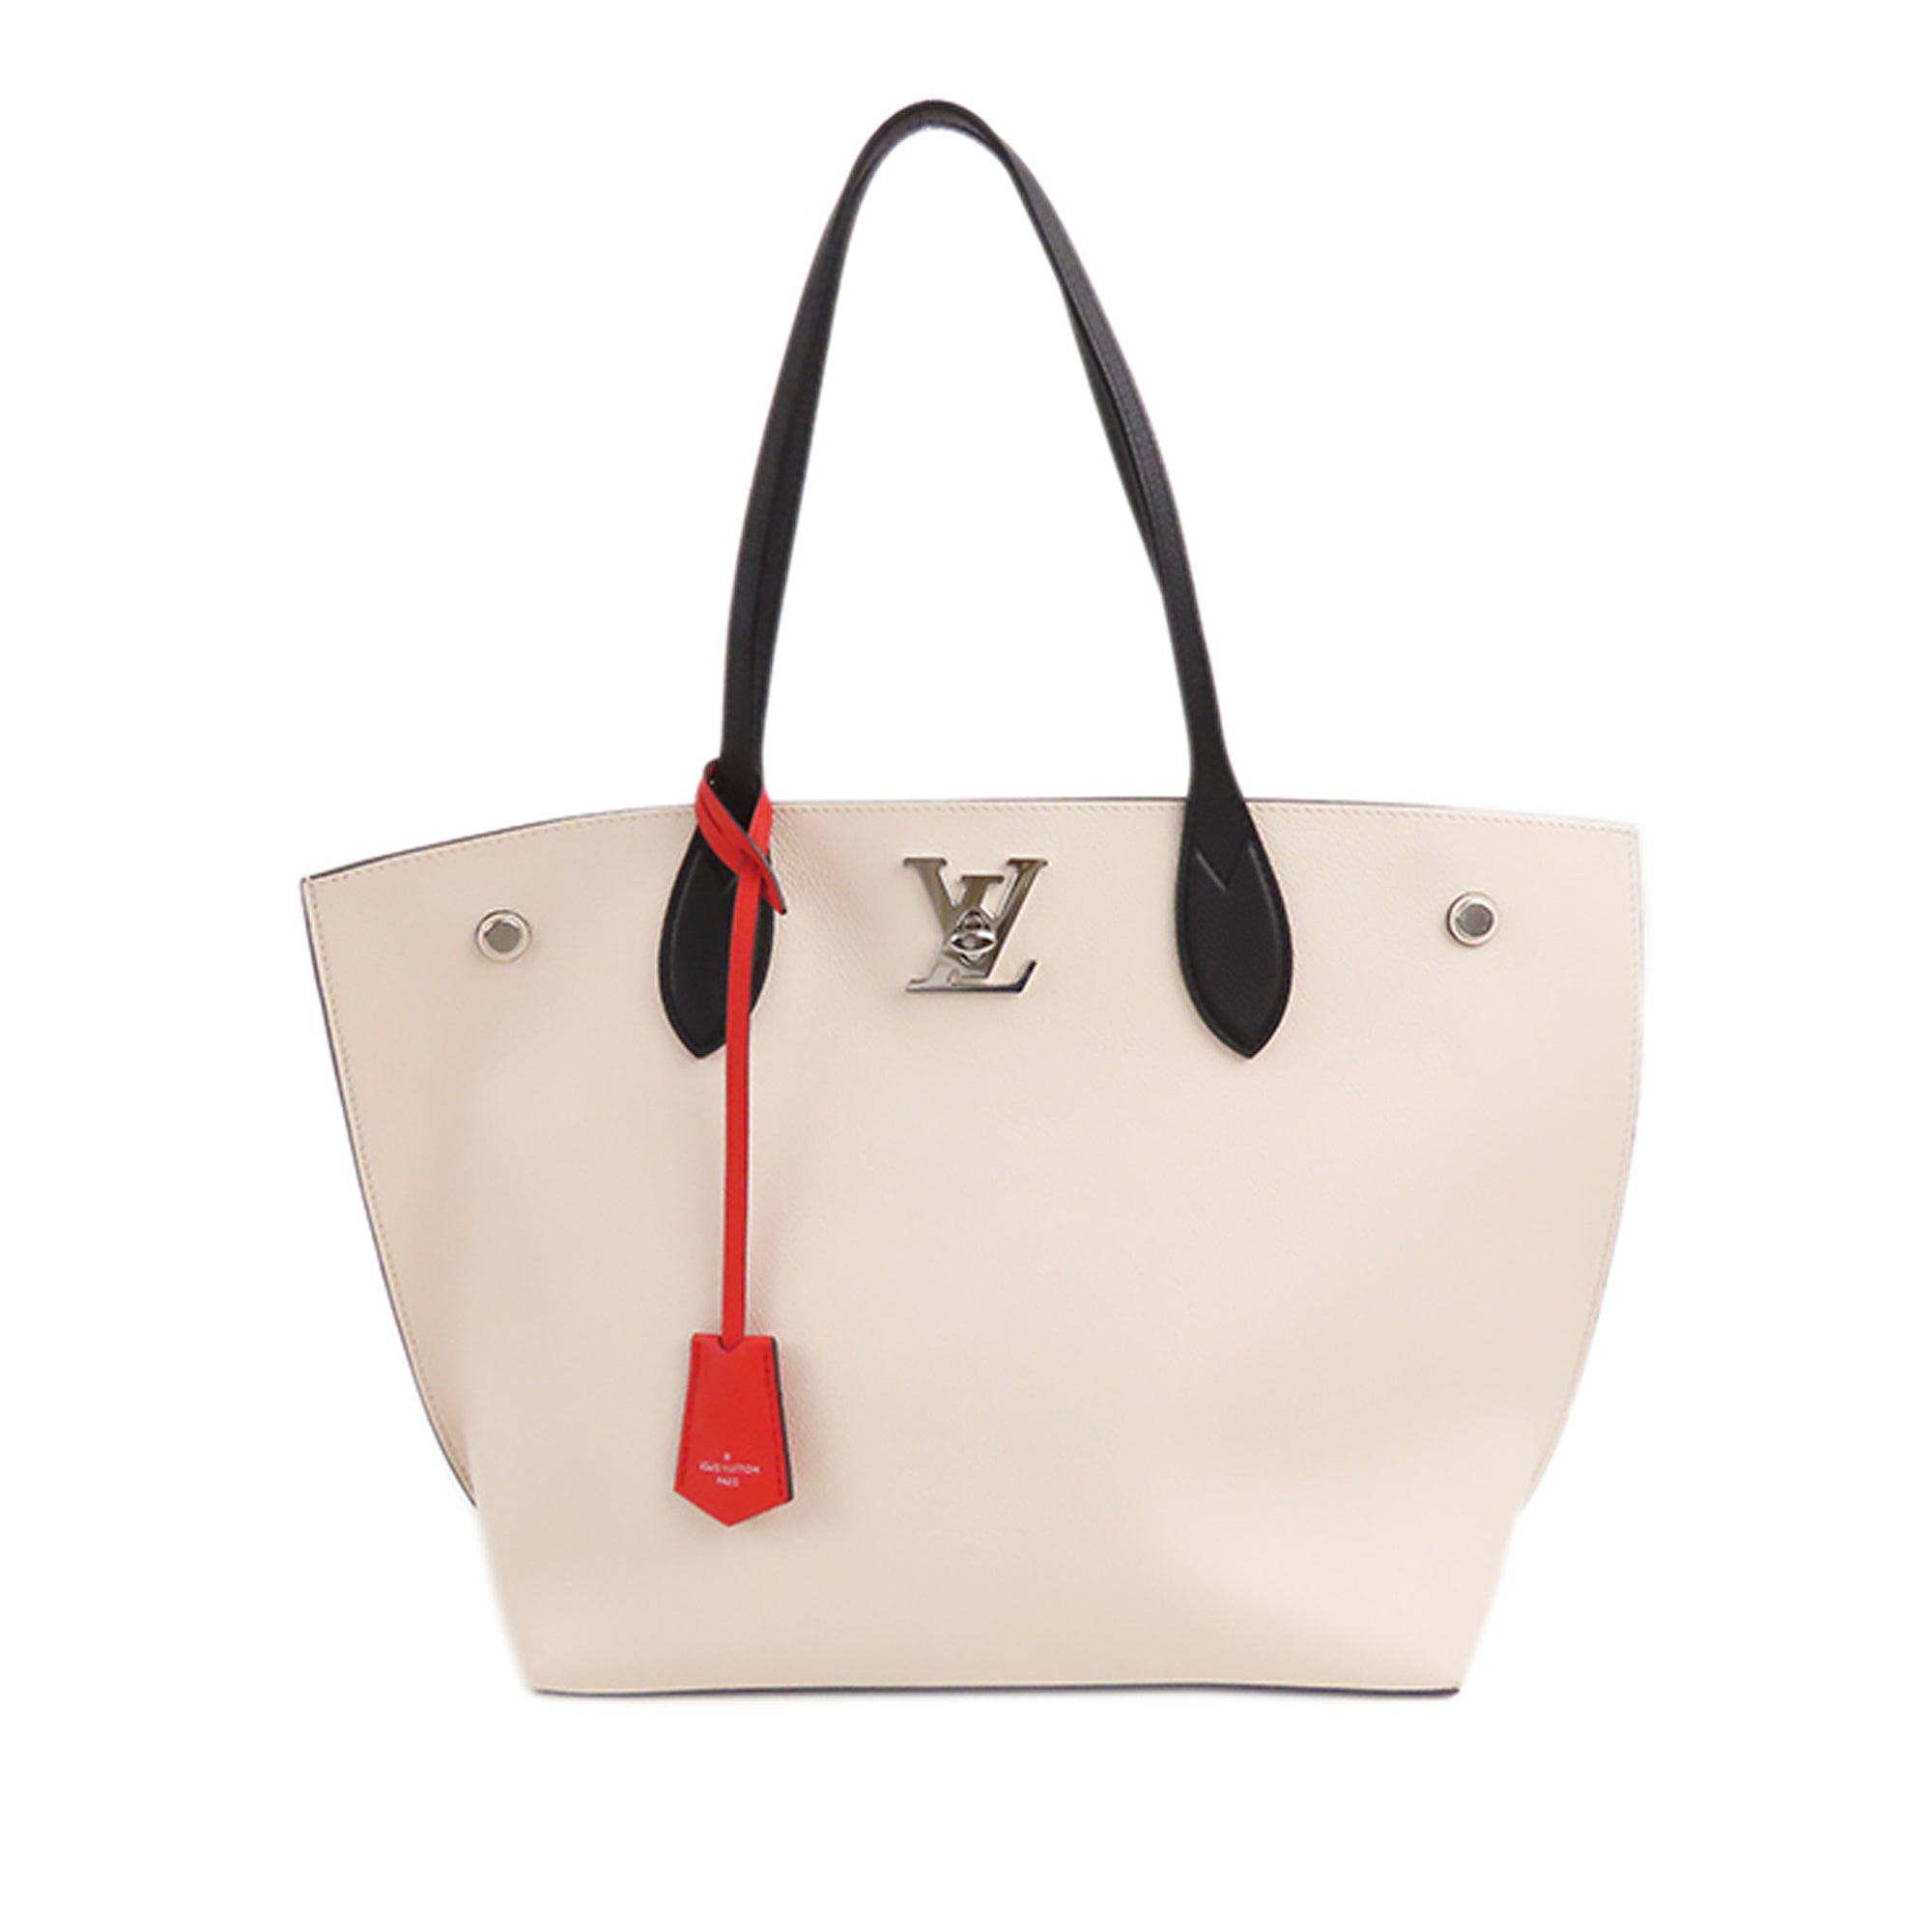 Louis Vuitton LV Logo Monogram White Front Row Lock Leather